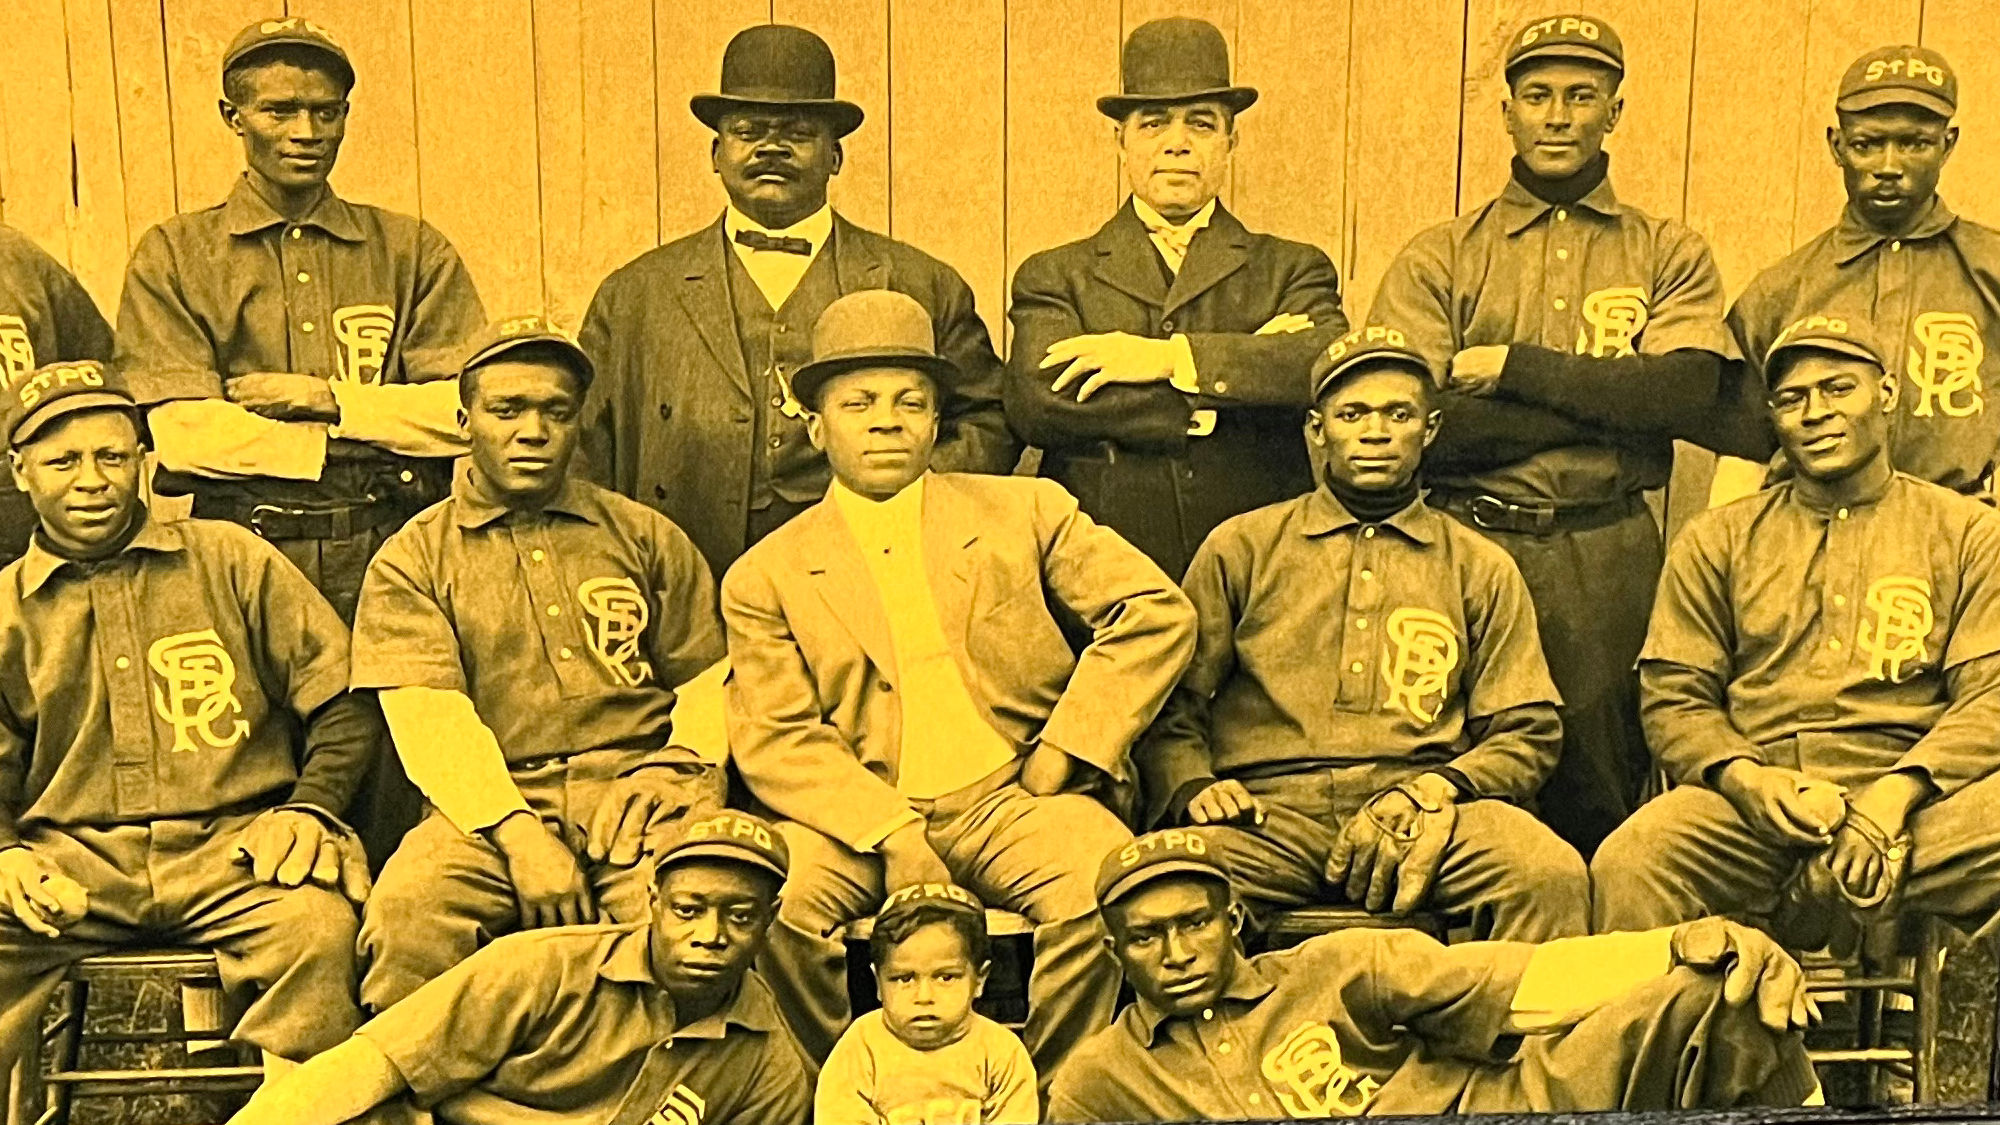 Negro Leagues Saint Paul Colored Gophers